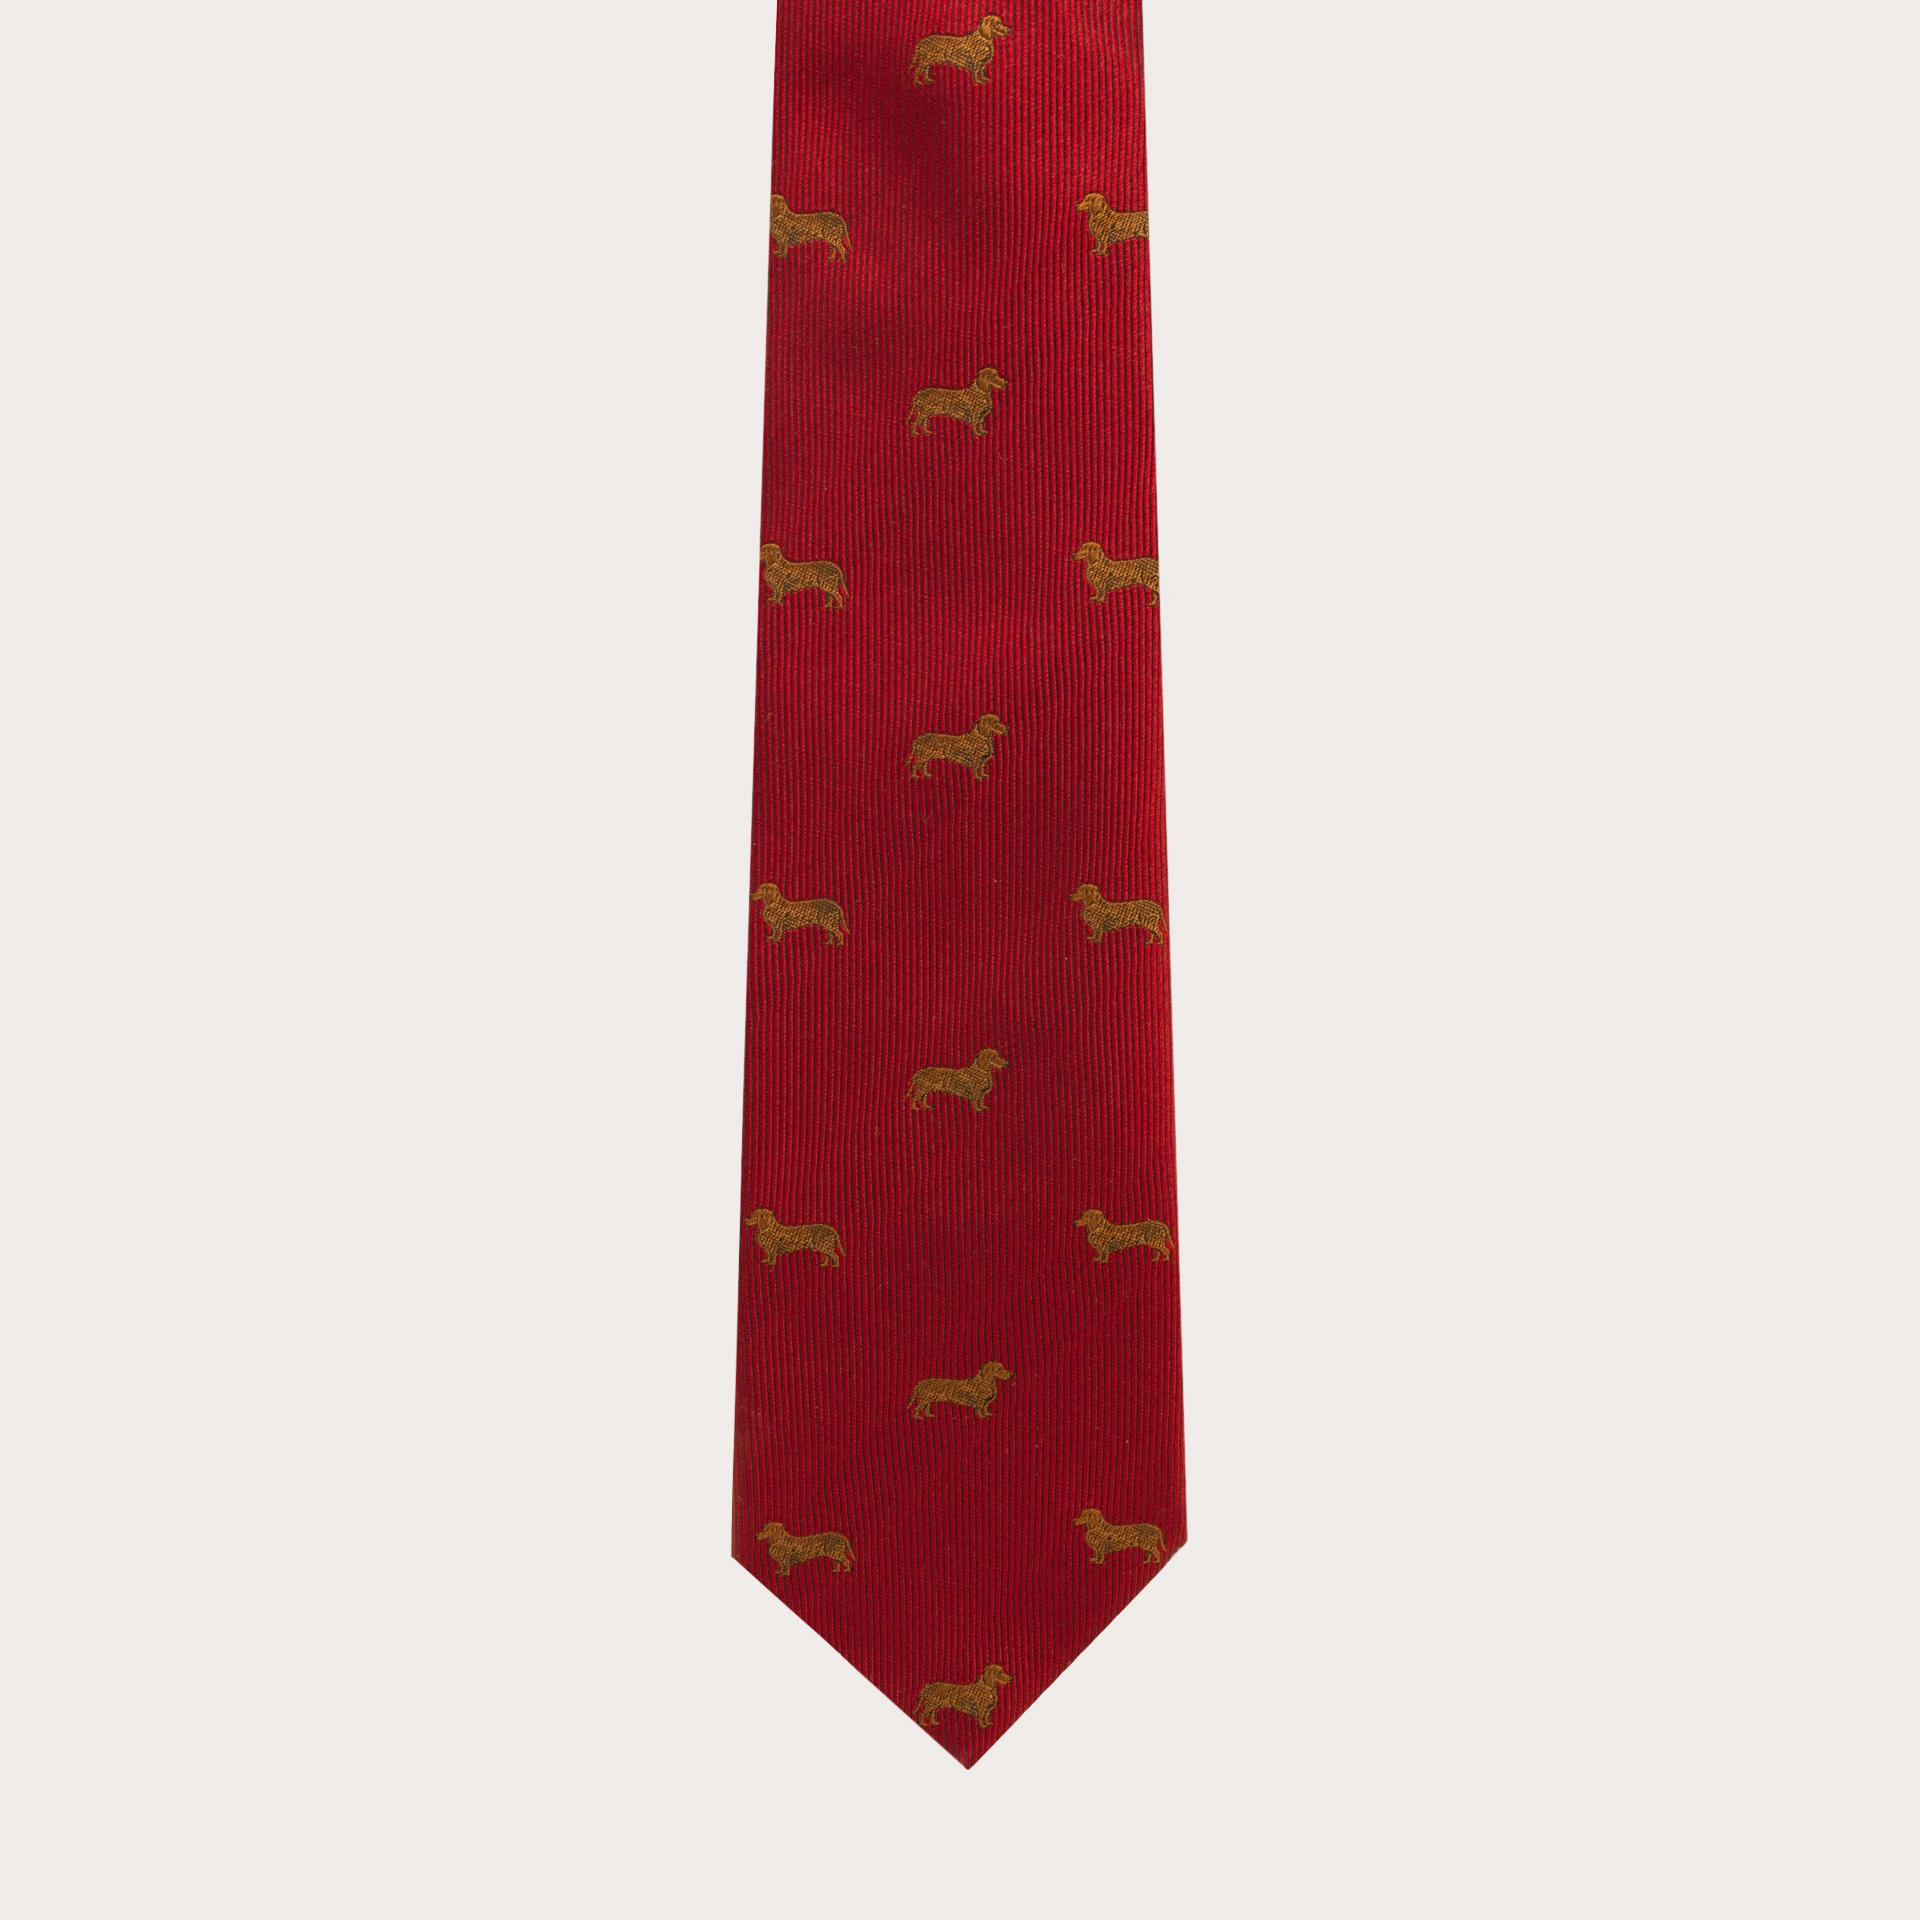 BRUCLE Corbata de seda jacquard, estampado de perros dachshund rojo